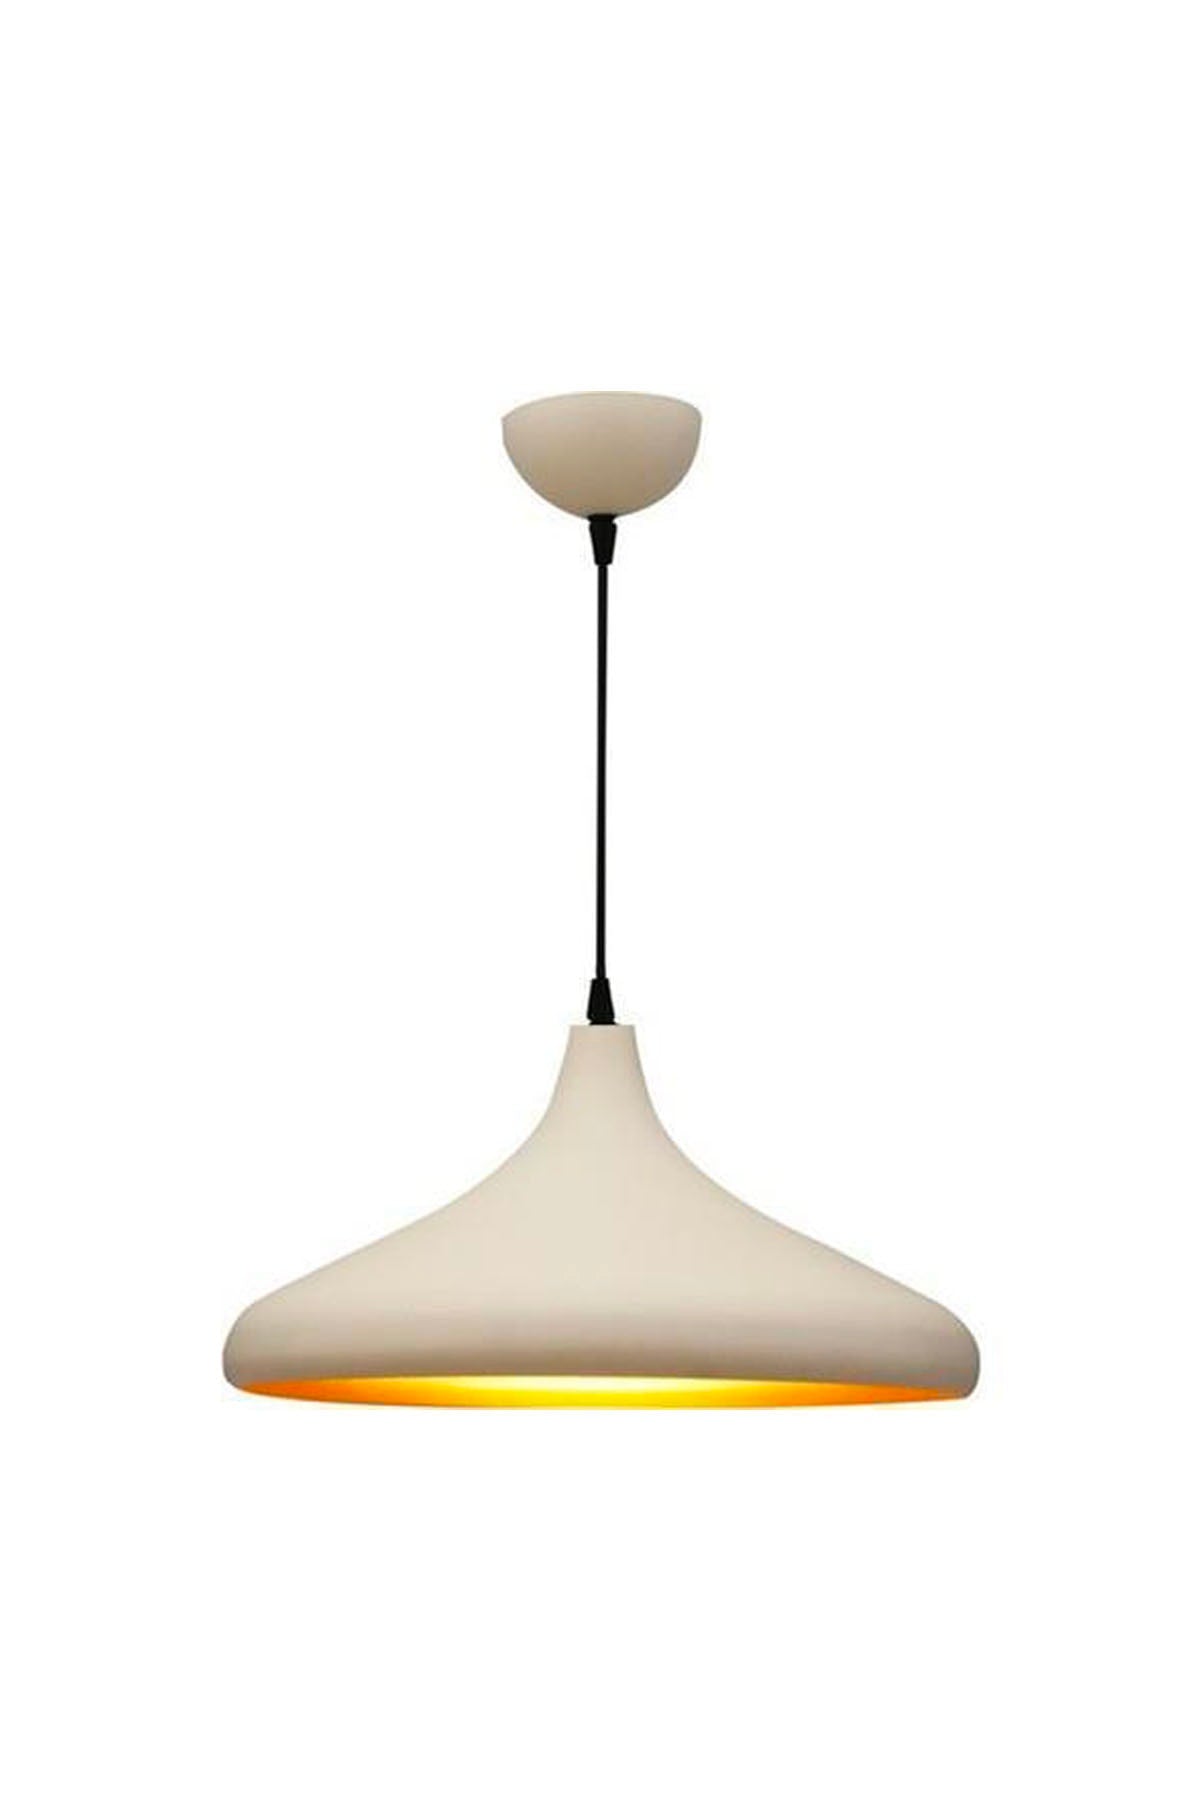 Pera White Single Modern Retro Pendant Lamp Living Room Chandelier